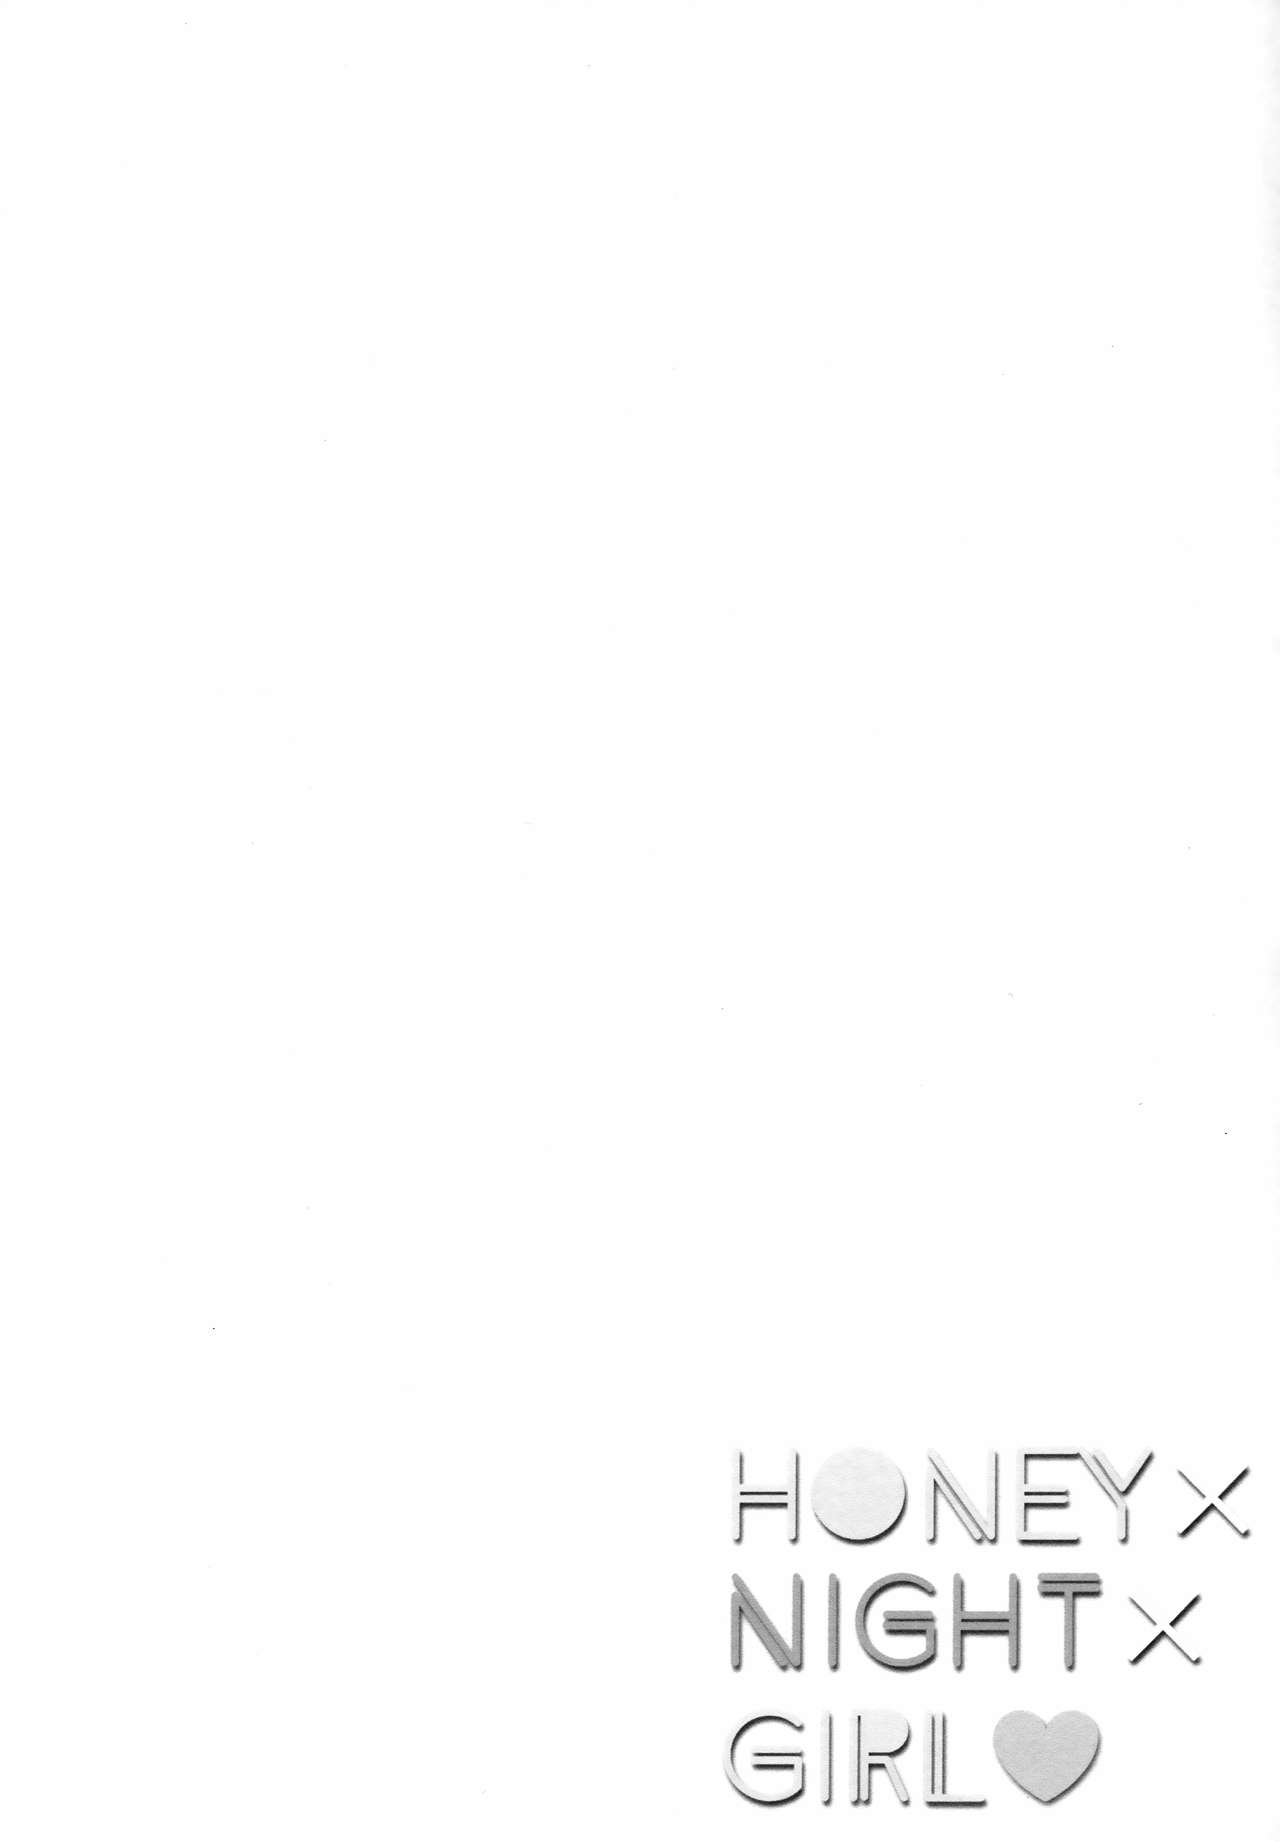 (C96) [Chocolate Synapse (Shika Yuno)] HONEY x NIGHT x GIRL (Hinabita) [Chinese] [JINANI Sound Team汉化] (C96) [Chocolate Synapse (椎架ゆの)] HONEY×NIGHT×GIRL (ひなビタ♪) [中国翻訳]